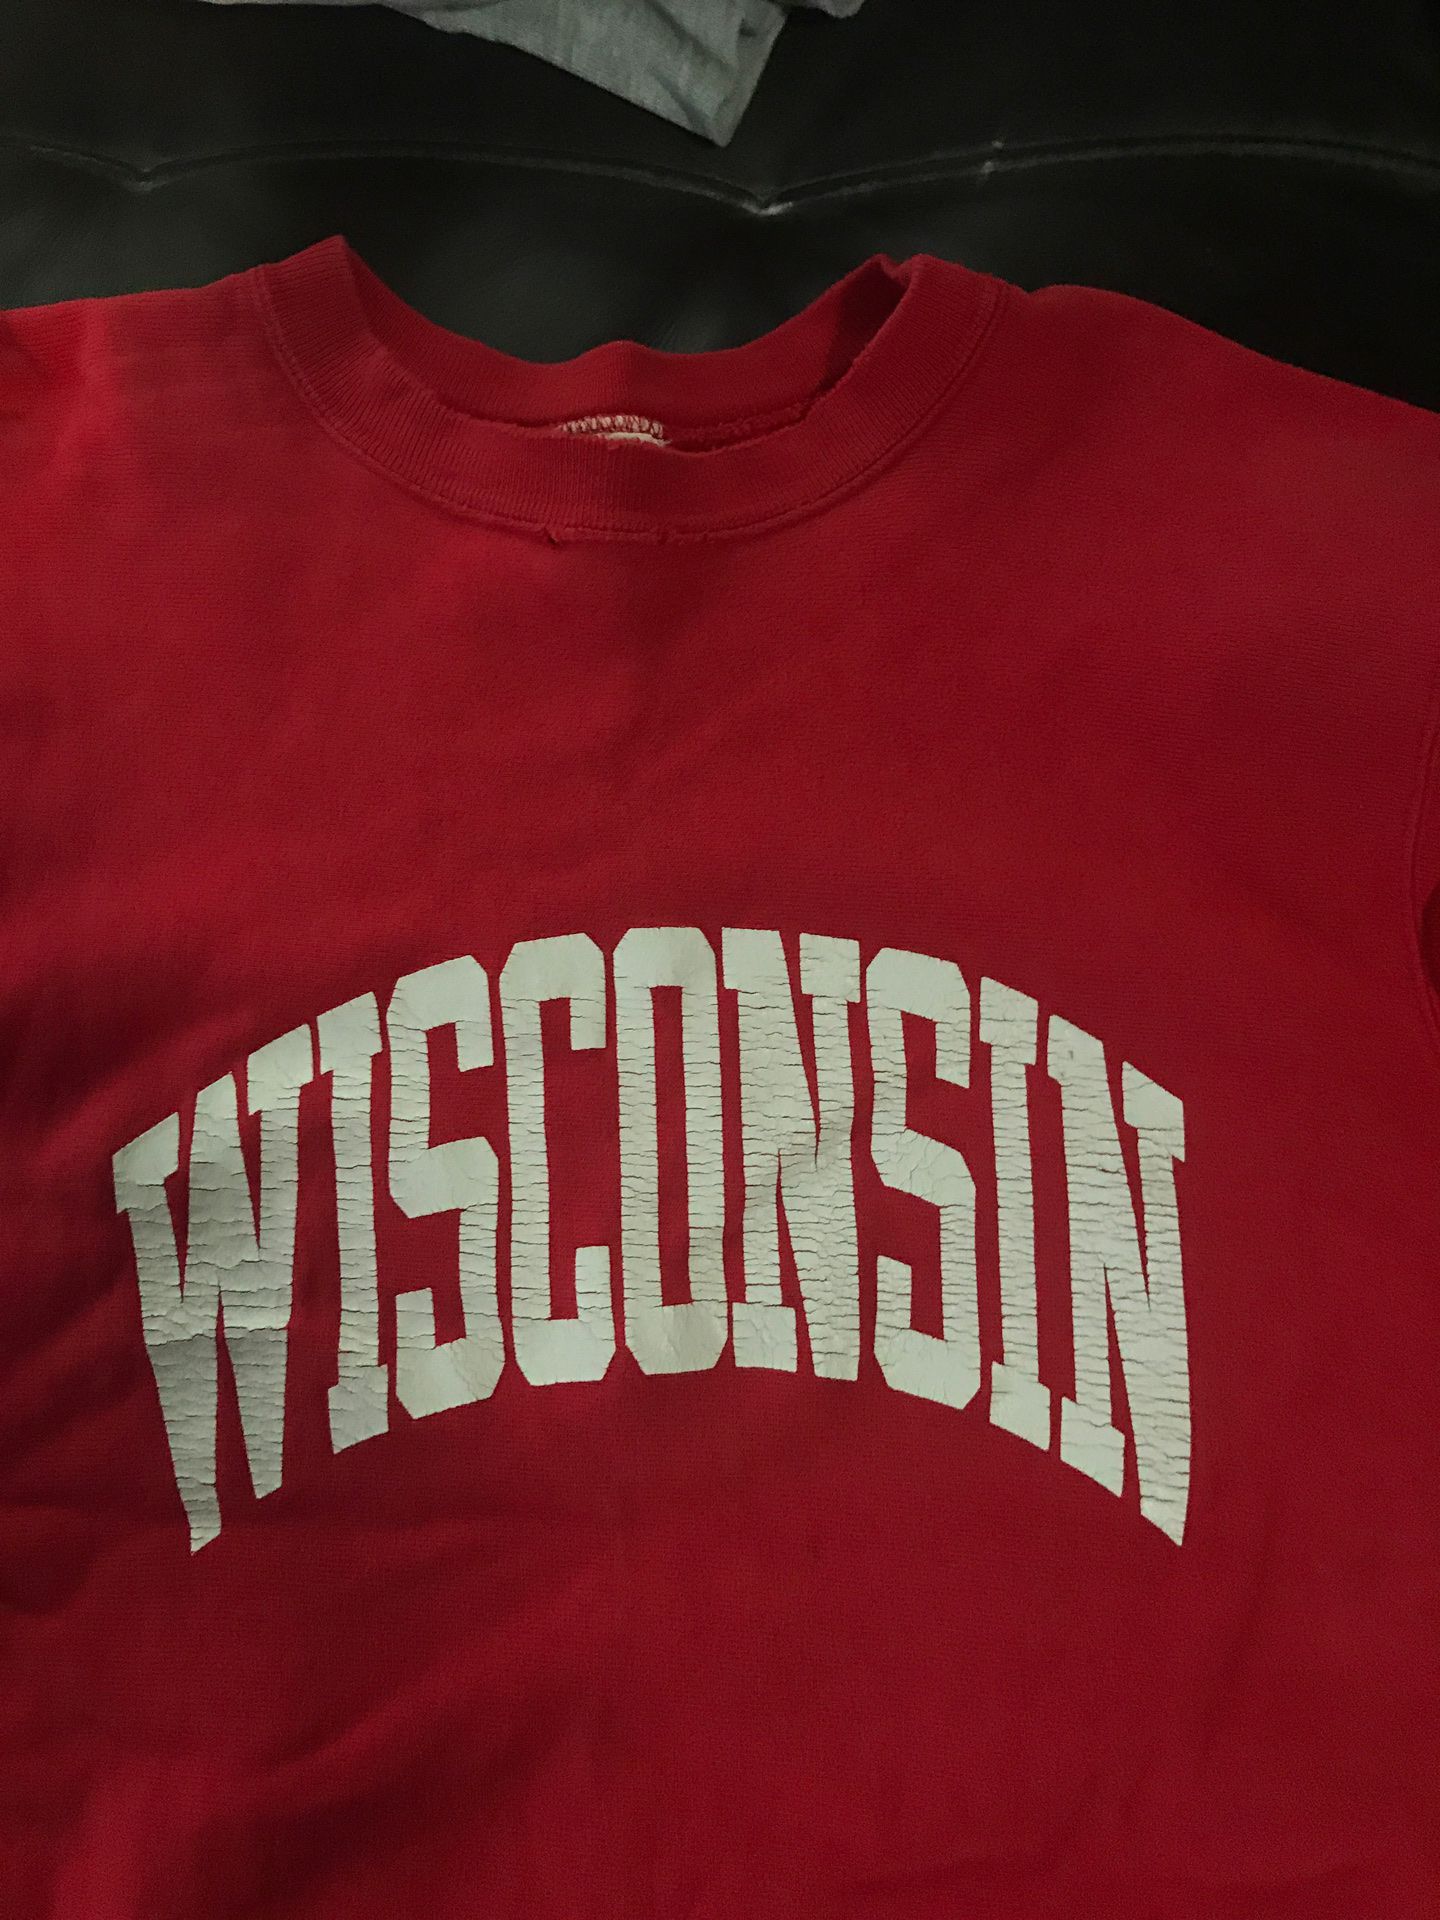 Wisconsin Badgers sweatshirt XL old school well worn